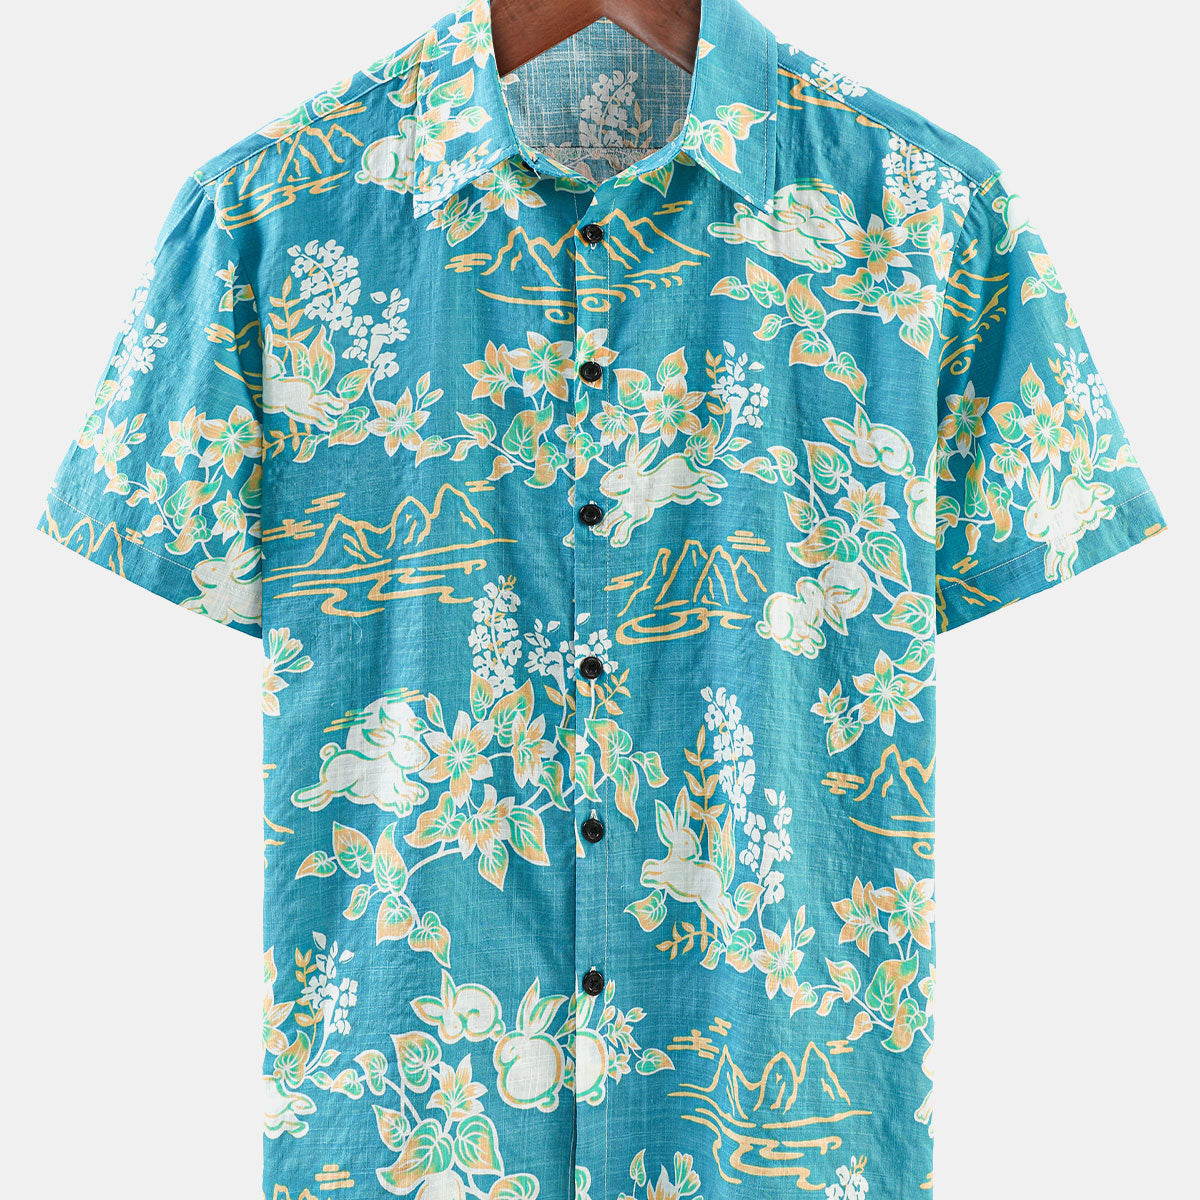 Men's Hawaiian Tropical Floral Print Beach Summer Short Sleeve Button Shirt